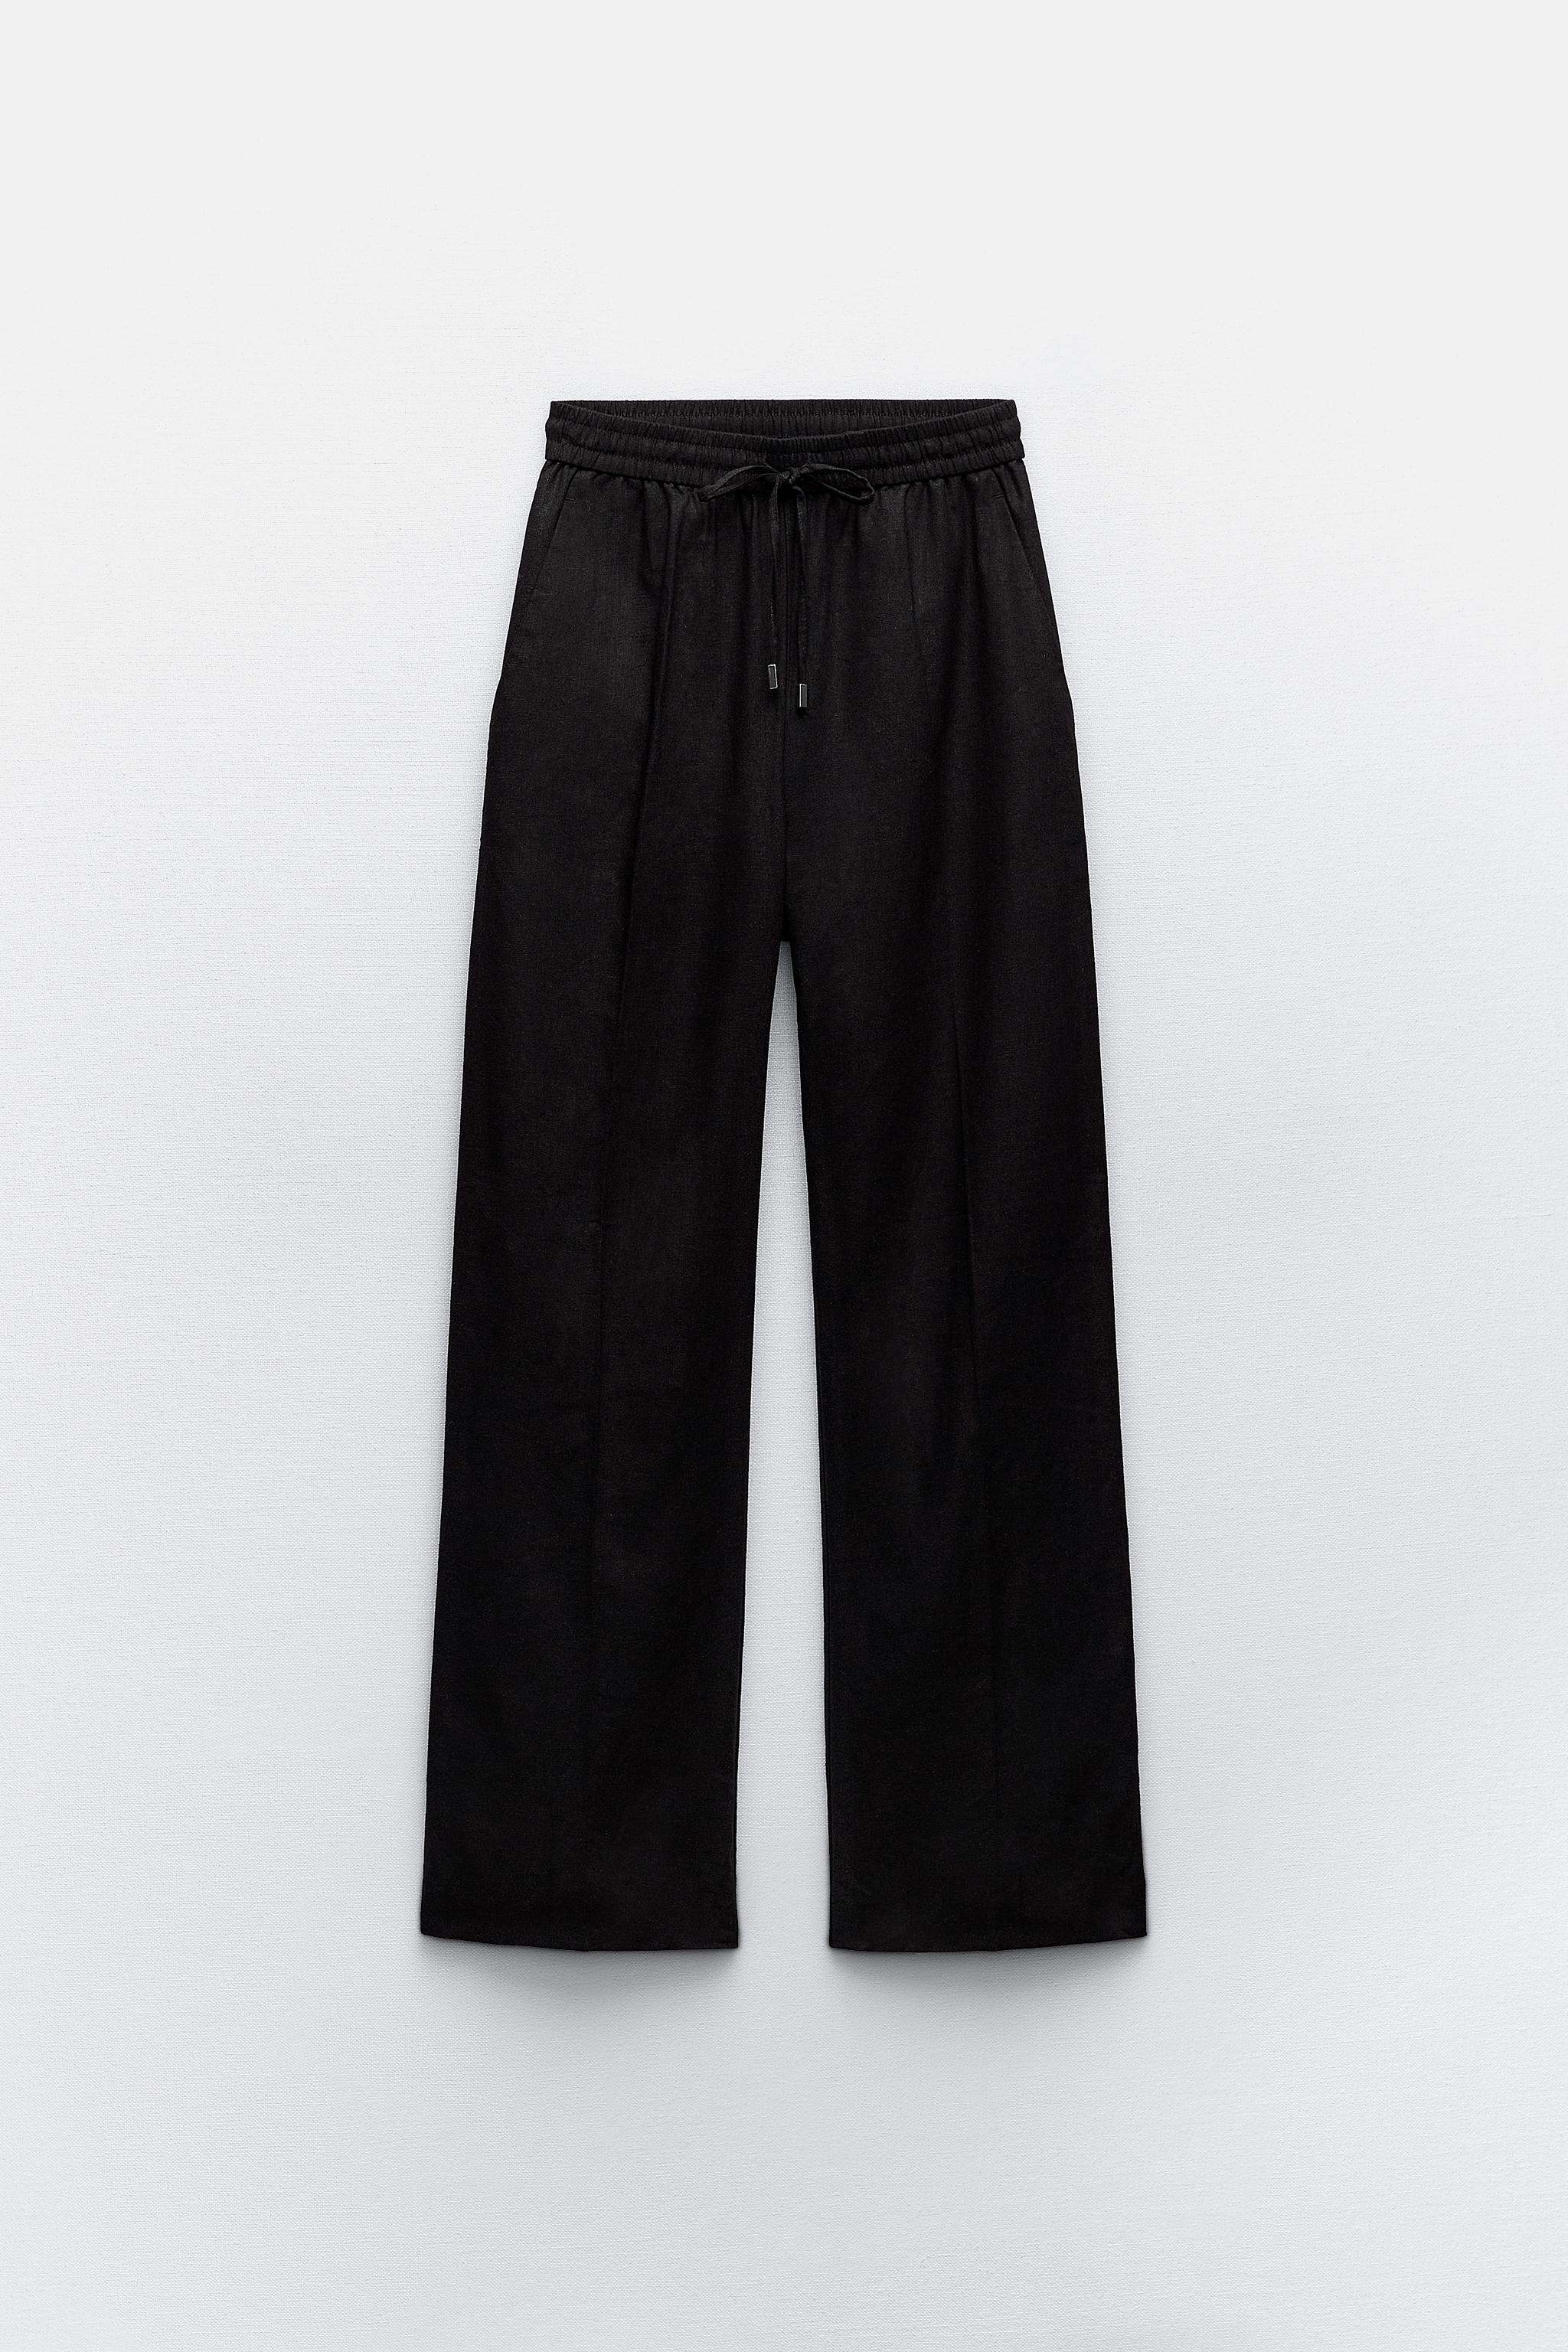 Pantalones de lino estilosos y muy cómodos: son de Zara y no te